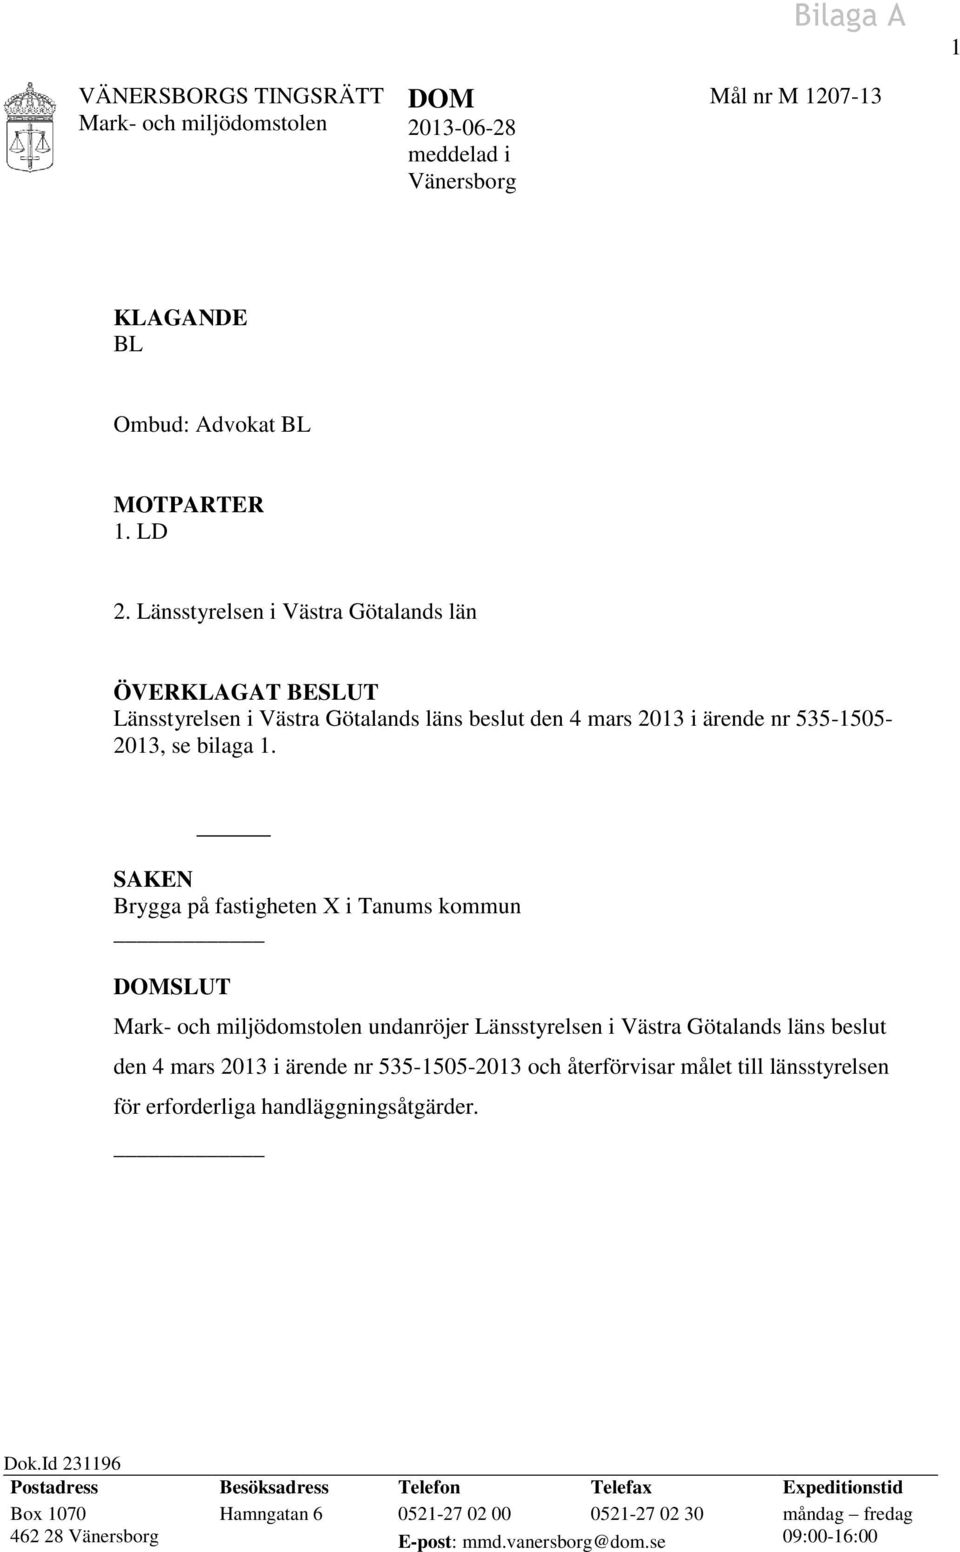 SAKEN Brygga på fastigheten X i Tanums kommun DOMSLUT undanröjer Länsstyrelsen i Västra Götalands läns beslut den 4 mars 2013 i ärende nr 535-1505-2013 och återförvisar målet till